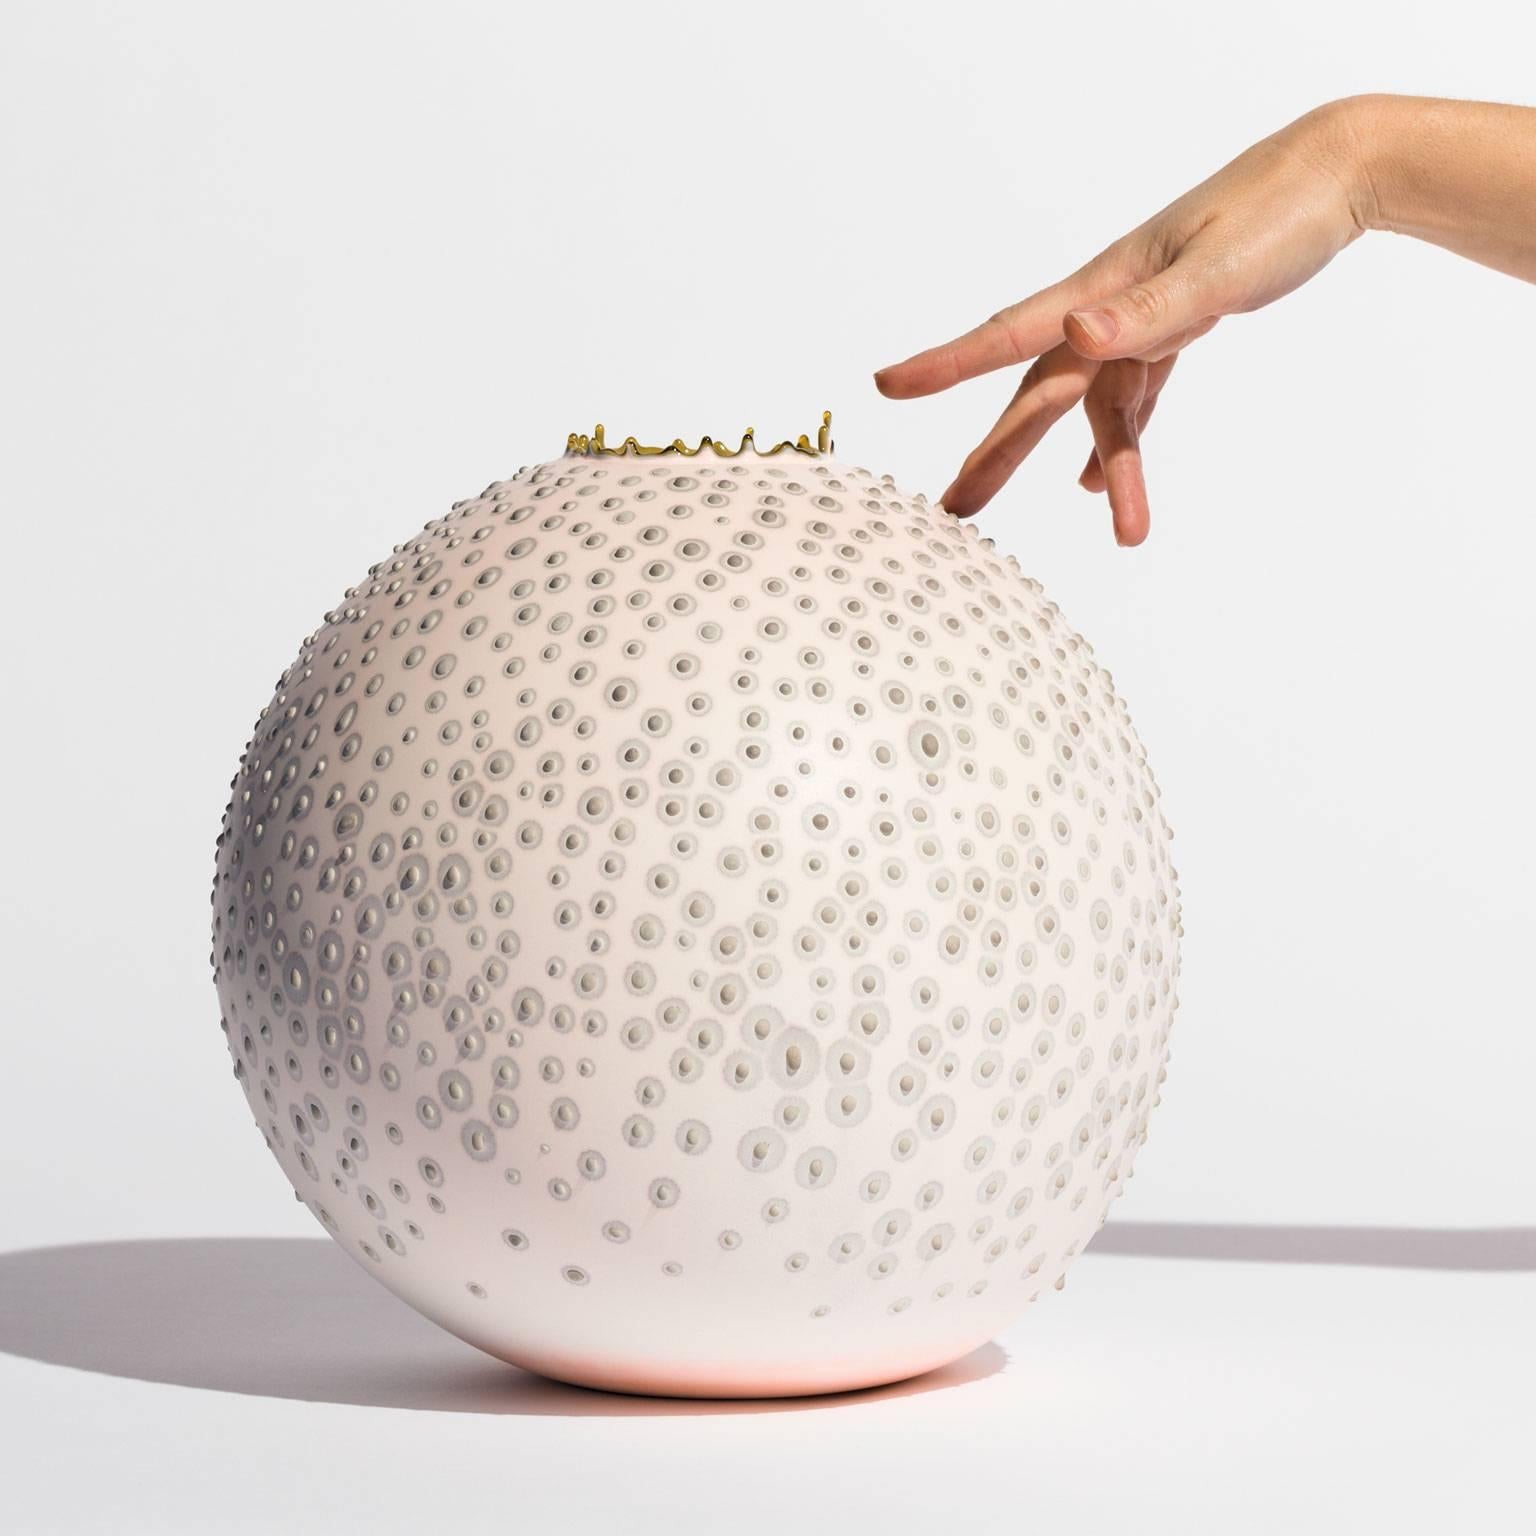 Ce vase ludique aux teintes douces est fabriqué à la main par l'artiste Elyse Graham dans son studio de Los Angeles.

Cette collection de vases s'inspire de notre incroyable microbiome diversifié.

L'artiste est connue pour sa palette de